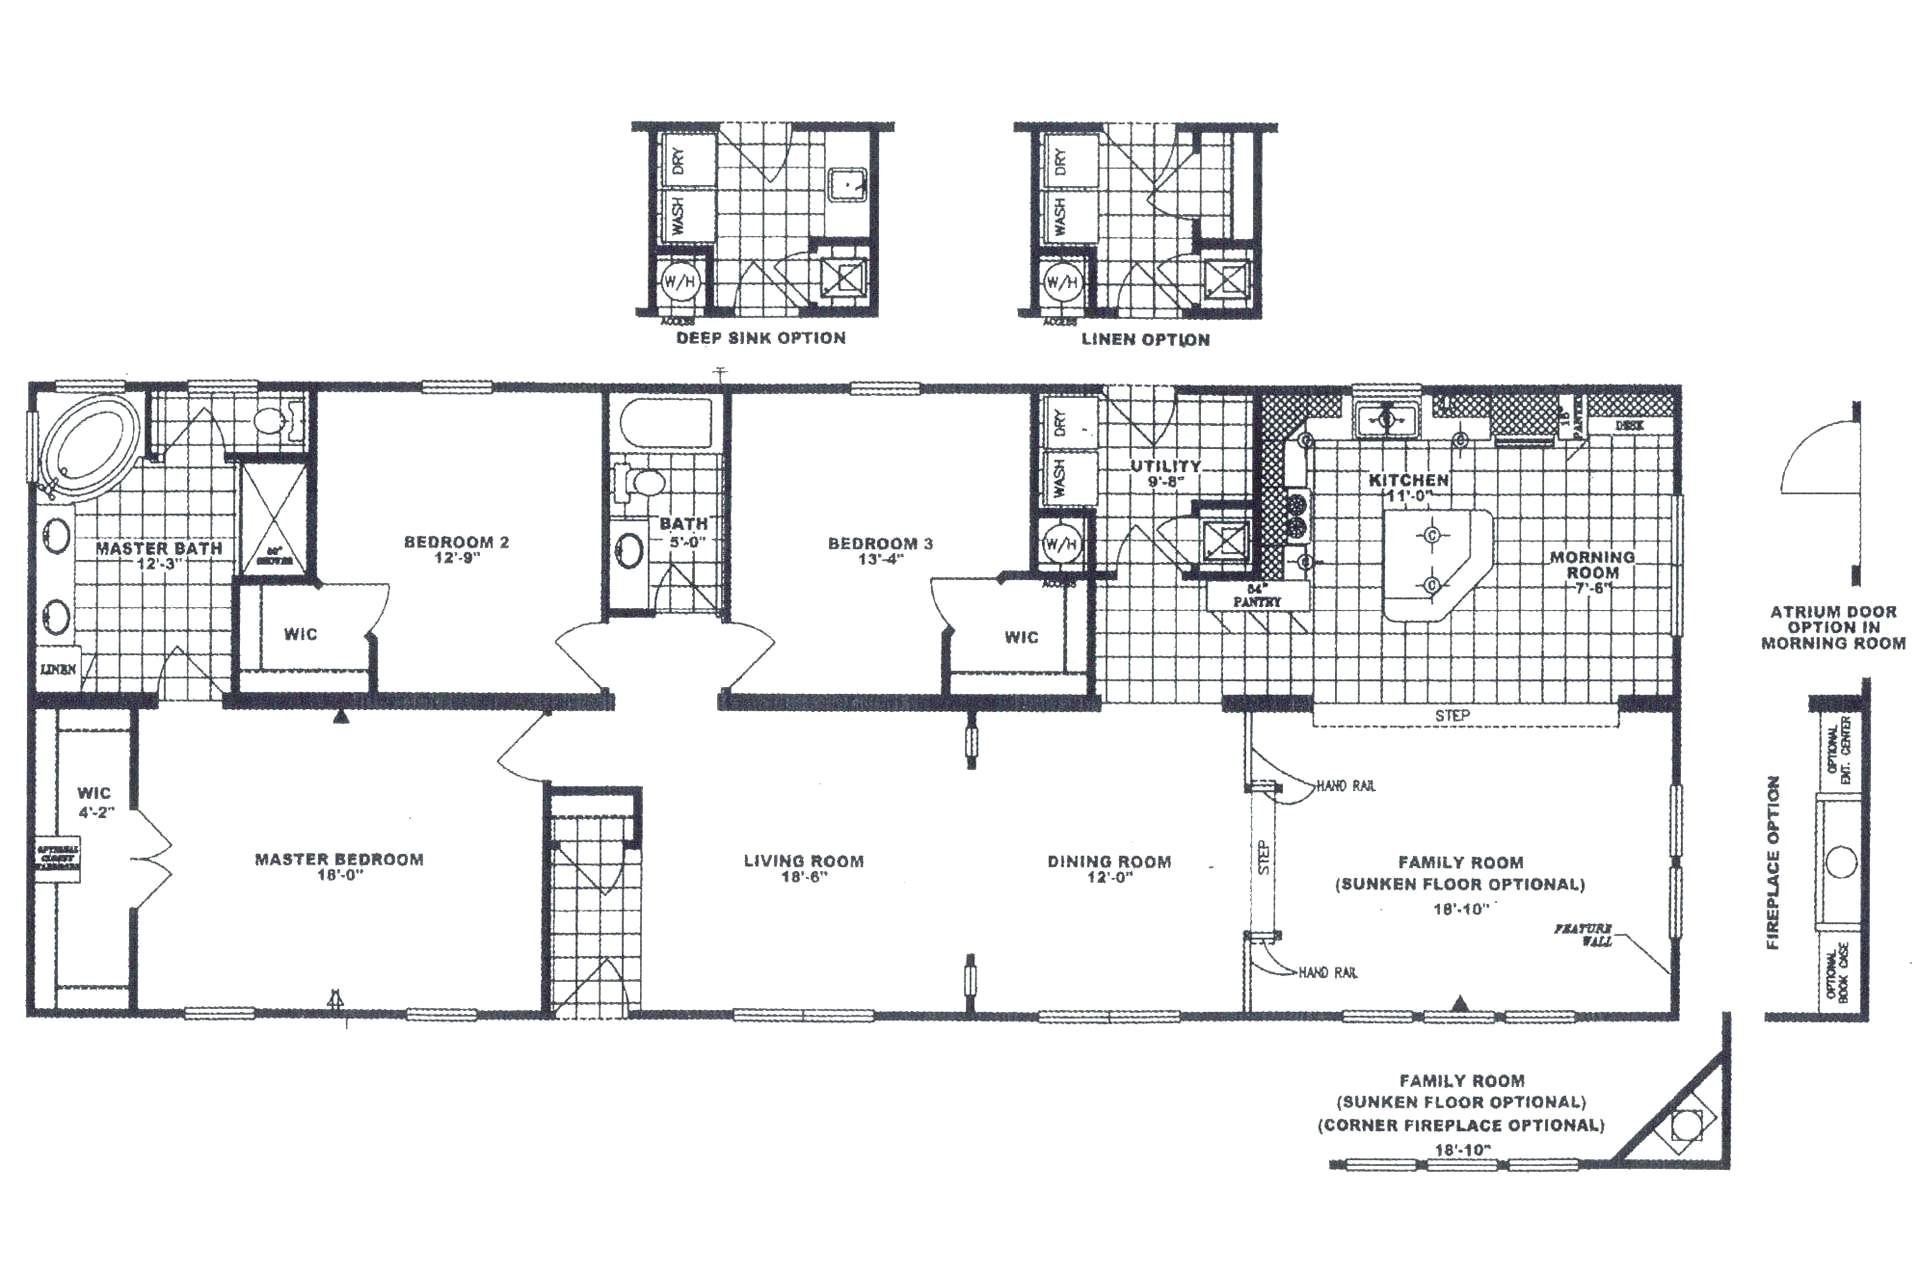 1999 oakwood mobile home floor plans